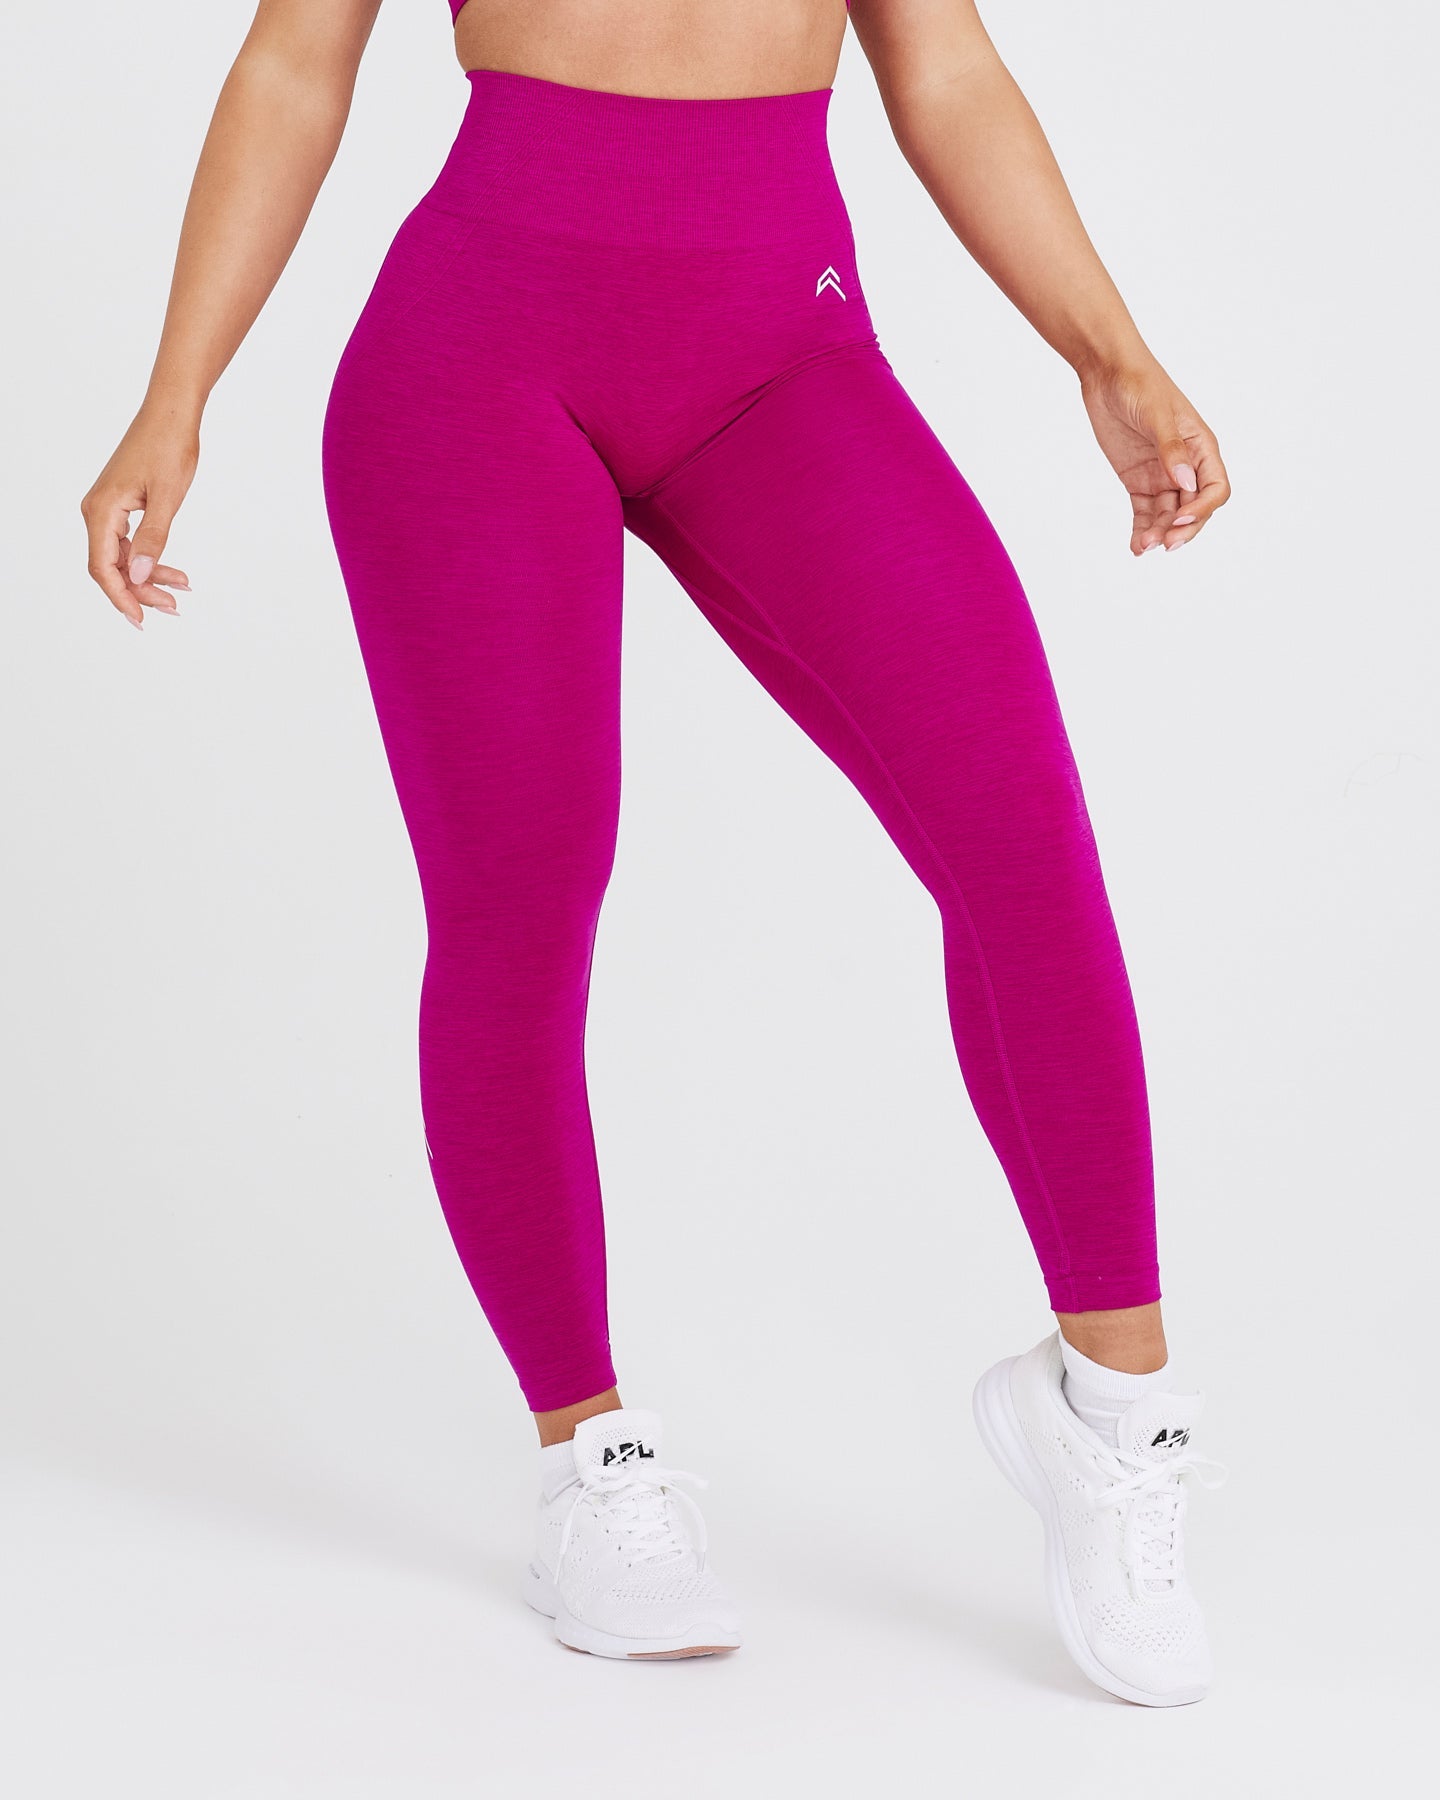 OYS Women's Workout Outfits, Two-Piece Seamless High Waist Yoga Leggings Set  - Fuchsia2., size: s : : Fashion